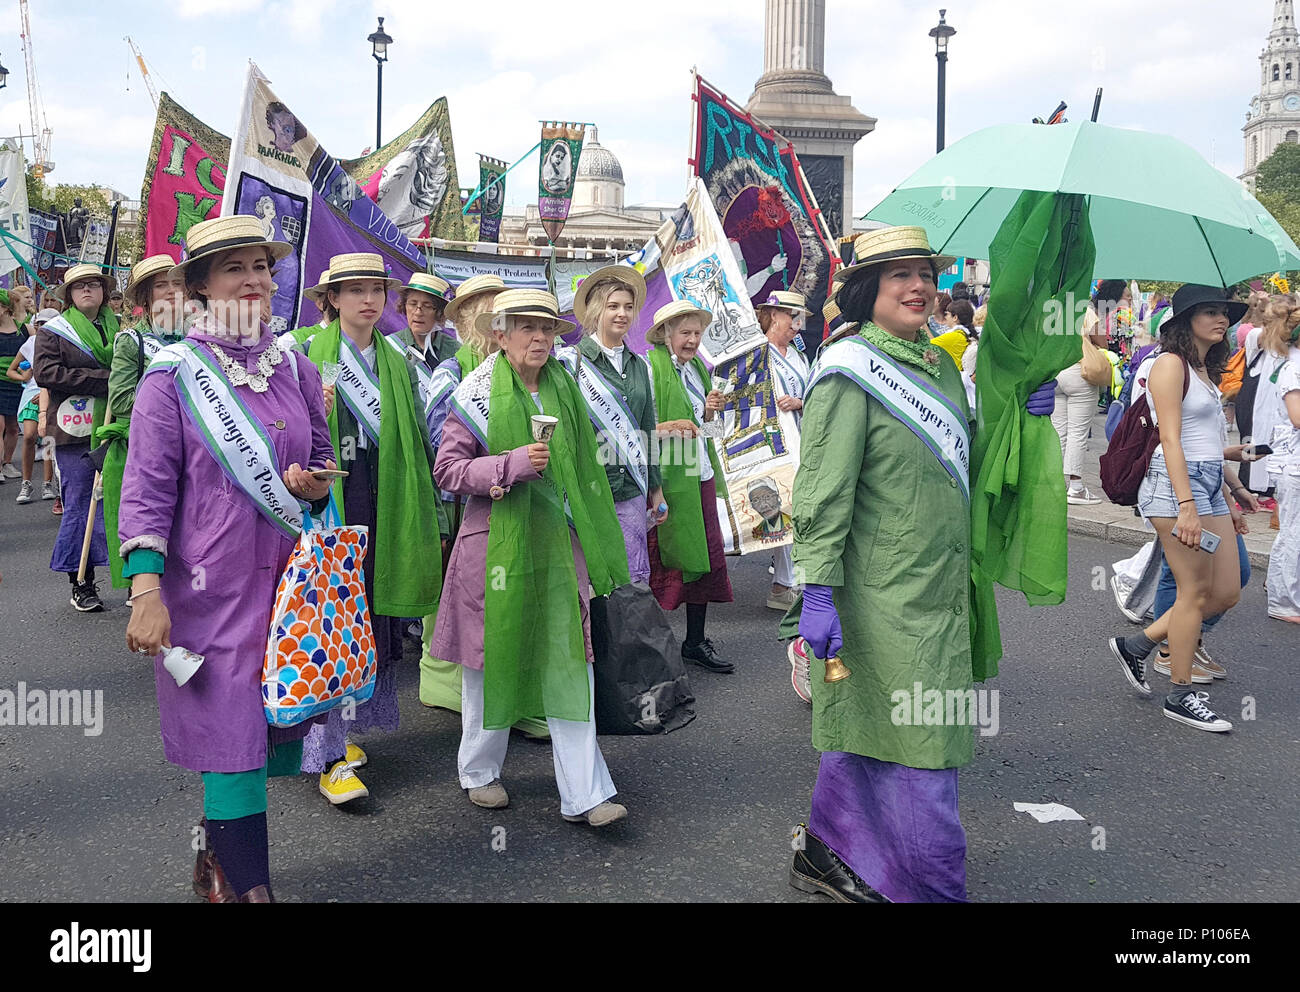 Un gruppo nel periodo vestito dal Turner Contemporary Art Gallery di Margate, unisciti a migliaia di persone marciando attraverso il centro di Londra vestito di verde, viola e bianco - i colori del movimento delle Suffragette - per celebrare i cento anni le donne sono state concesse alla votazione. Foto Stock